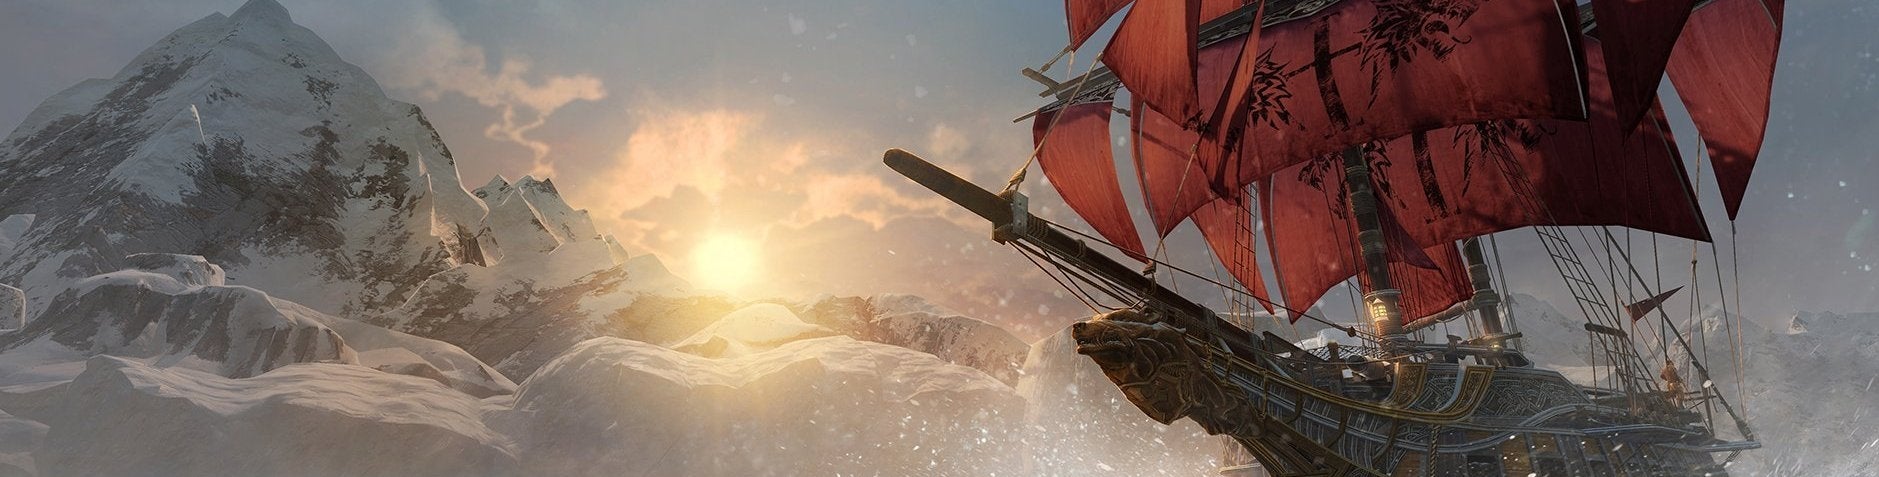 Afbeeldingen van 'Assassin's Creed: Rogue heeft geen multiplayer'